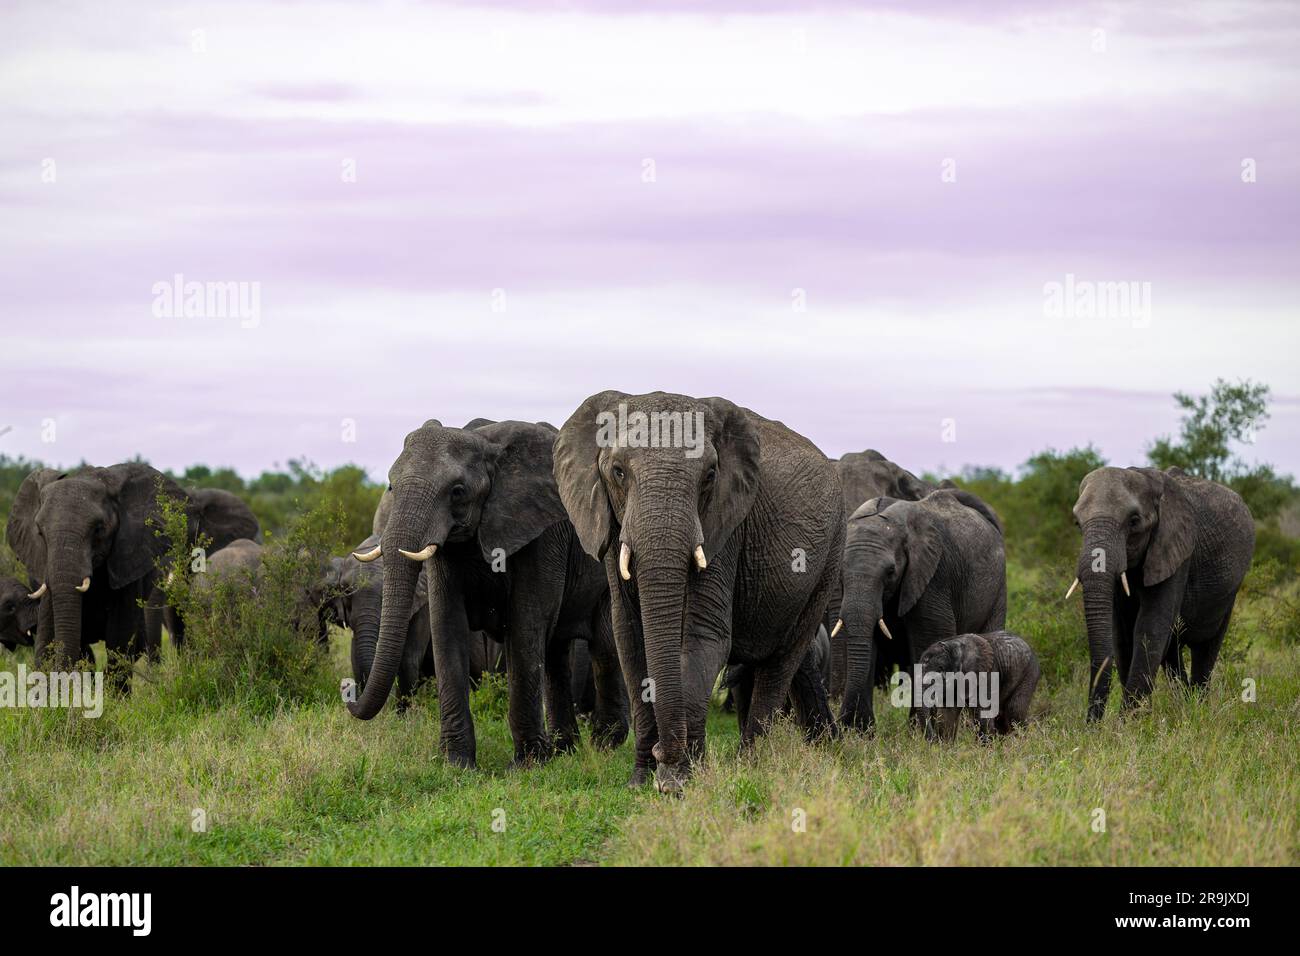 Un troupeau d'éléphants, Loxodonta africana, marchant dans l'herbe. Banque D'Images